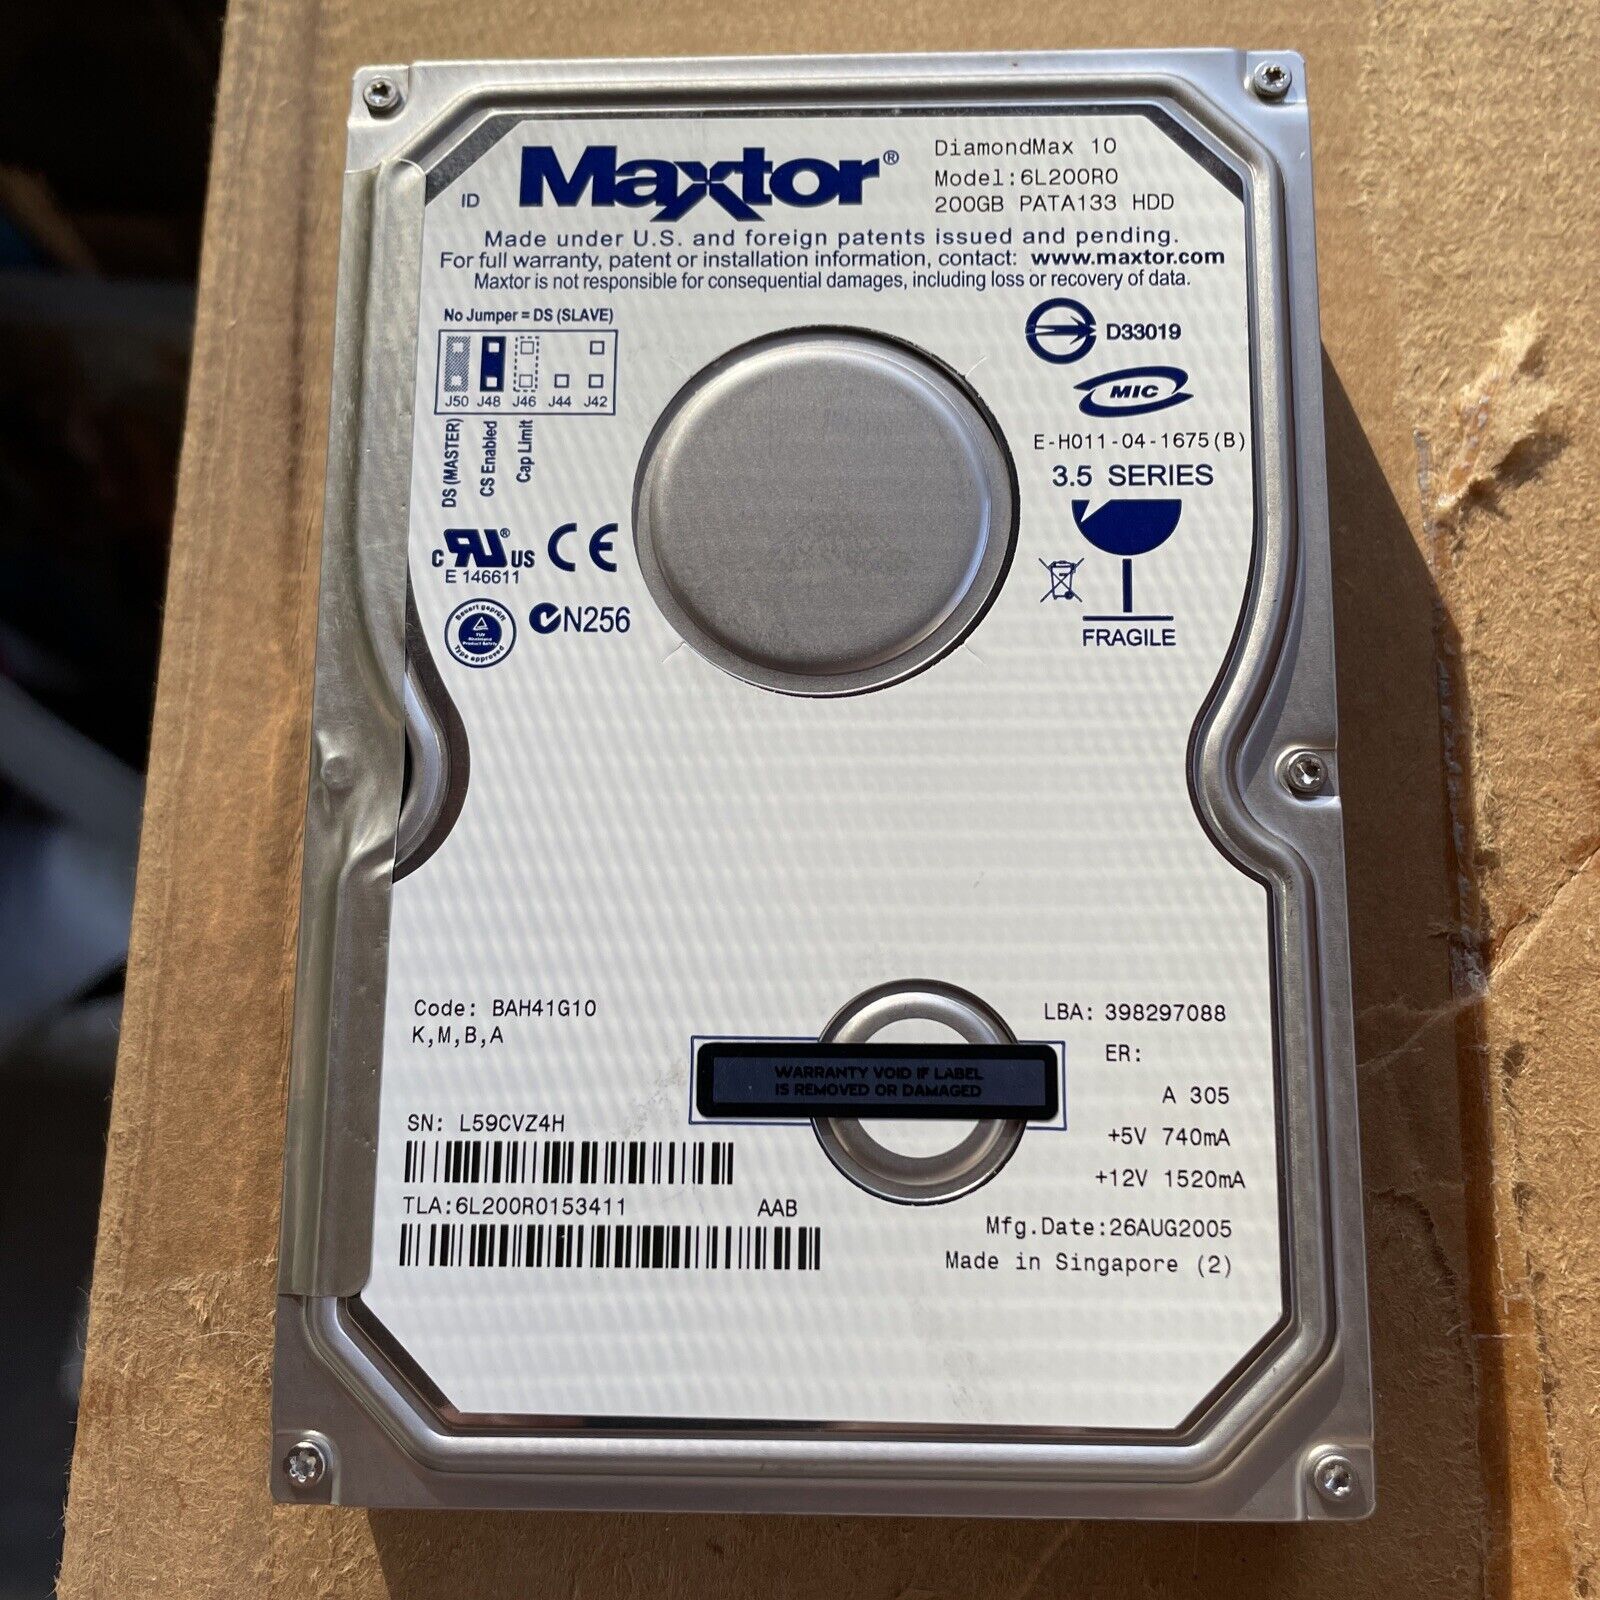 Maxtor DiamondMax 10 200 GB (6L200R0)